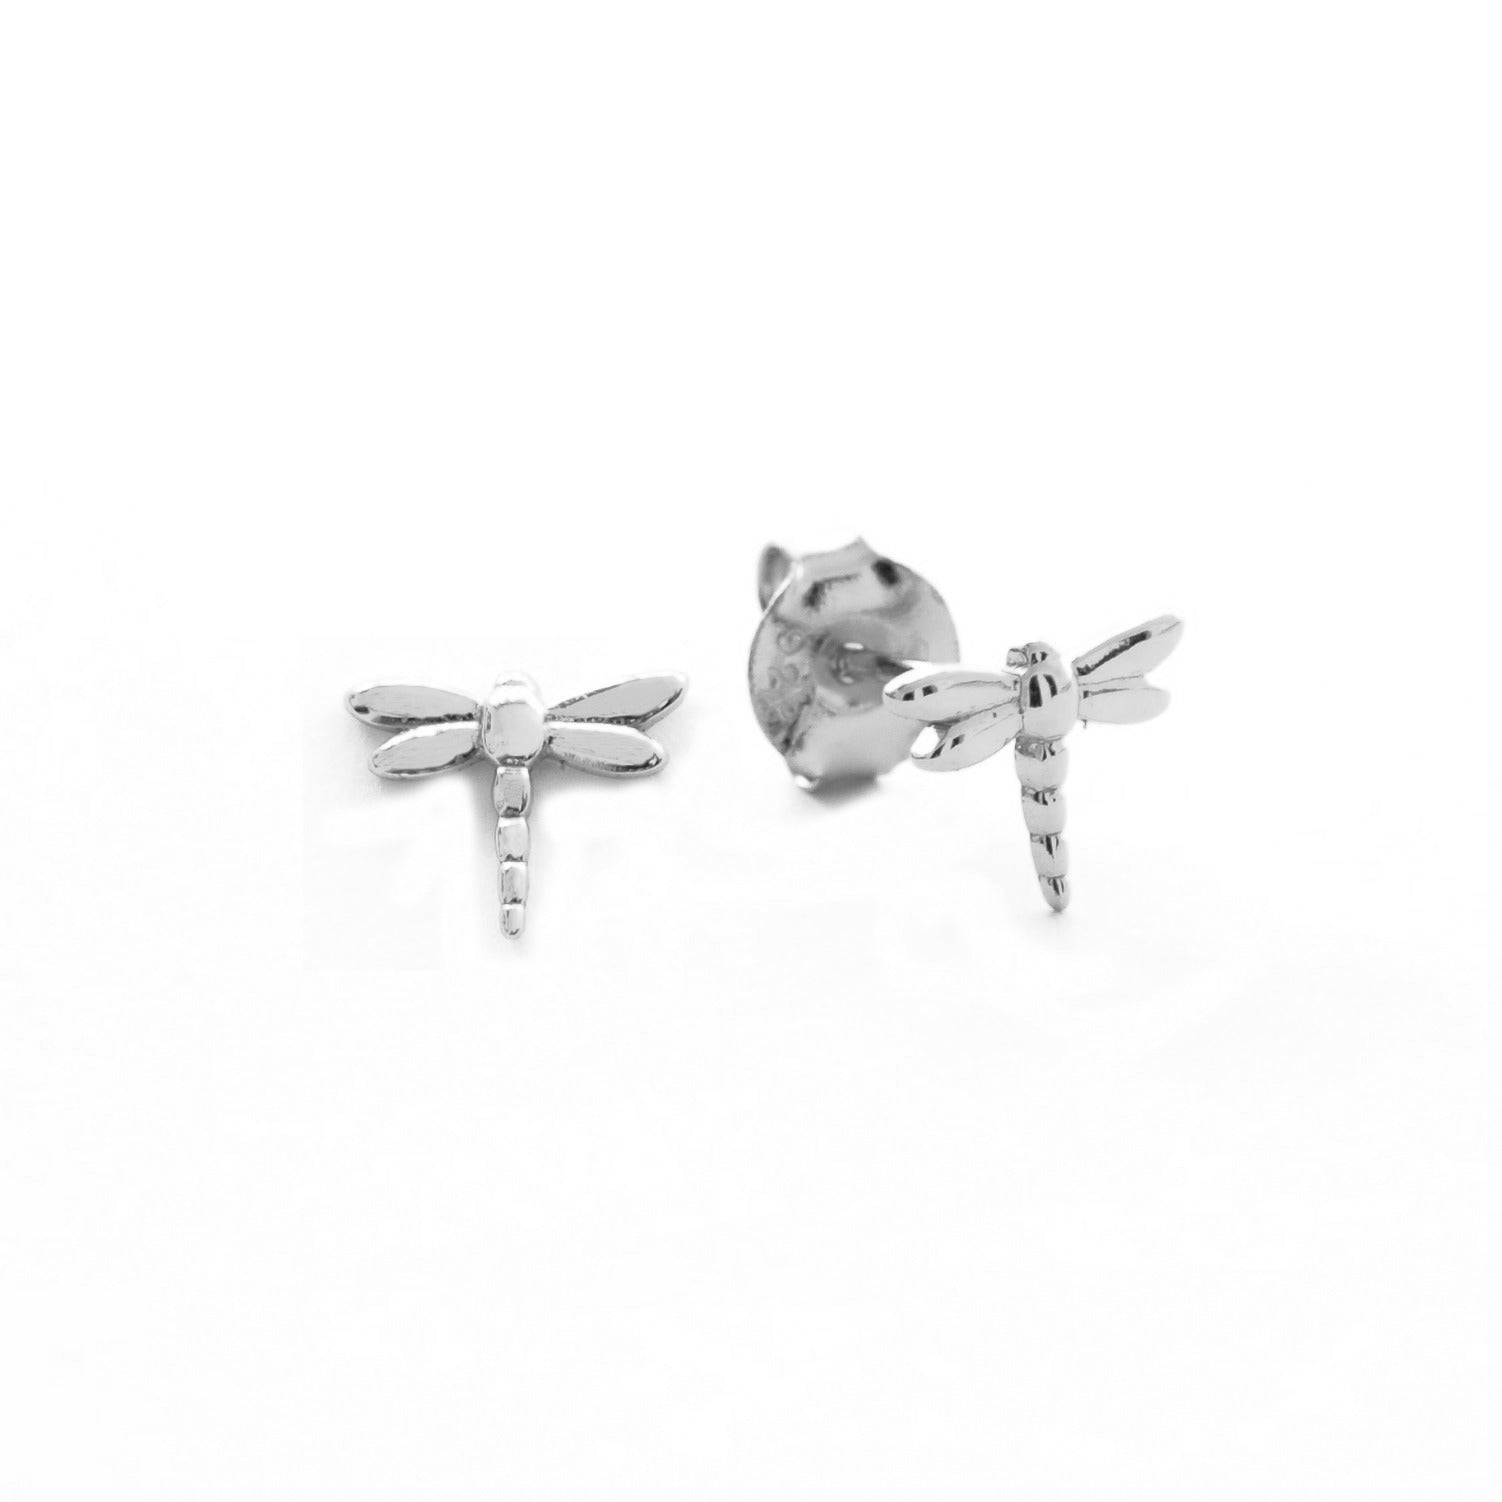 Dragon-fly earring silver - ByMirelae